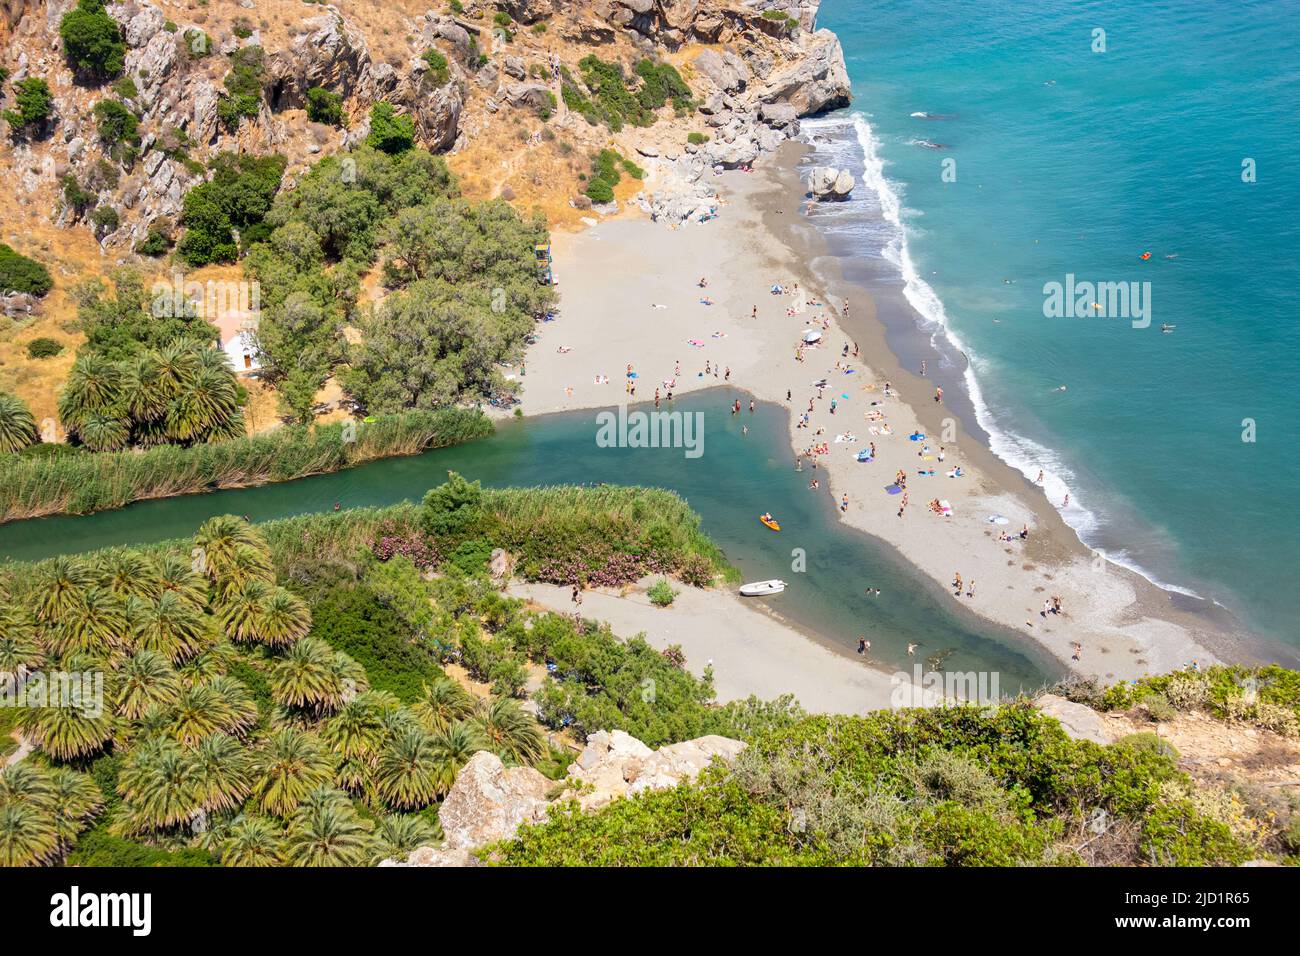 Malerischer Preveli Strand auf Kreta, Griechenland, Europa. Sonniger Sommertag. Blaues Meer und Himmel. Tal von oben gesehen Aussichtspunkt. Palmenwald, riv Stockfoto